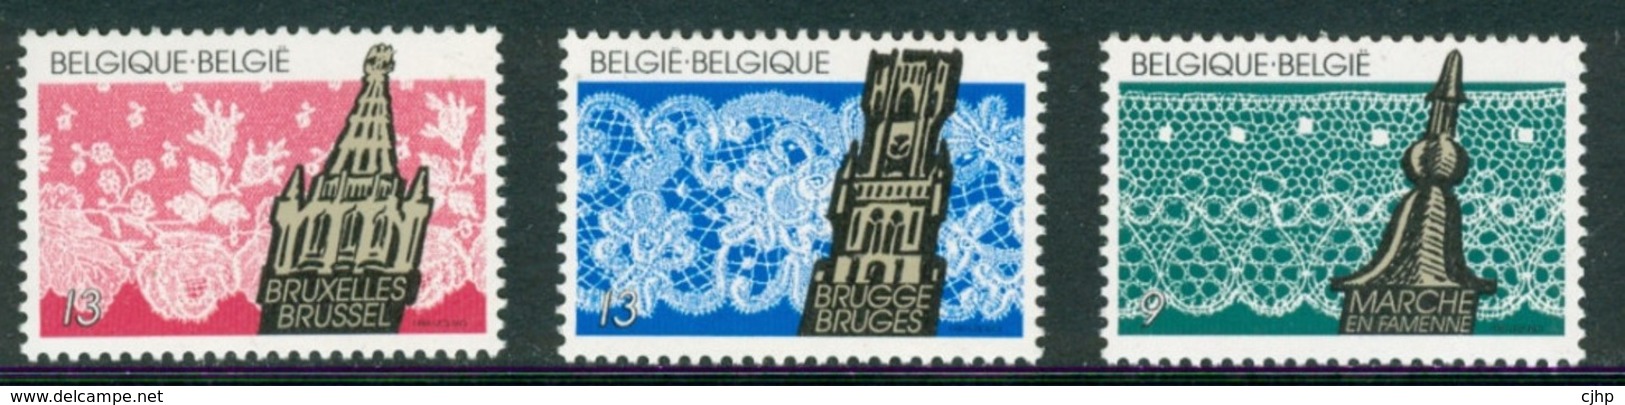 18/8 (4/19/4) Belgique Belgie Belgium    XX Denteles Brugge Bruxelles Marche En Famenne - Textiles